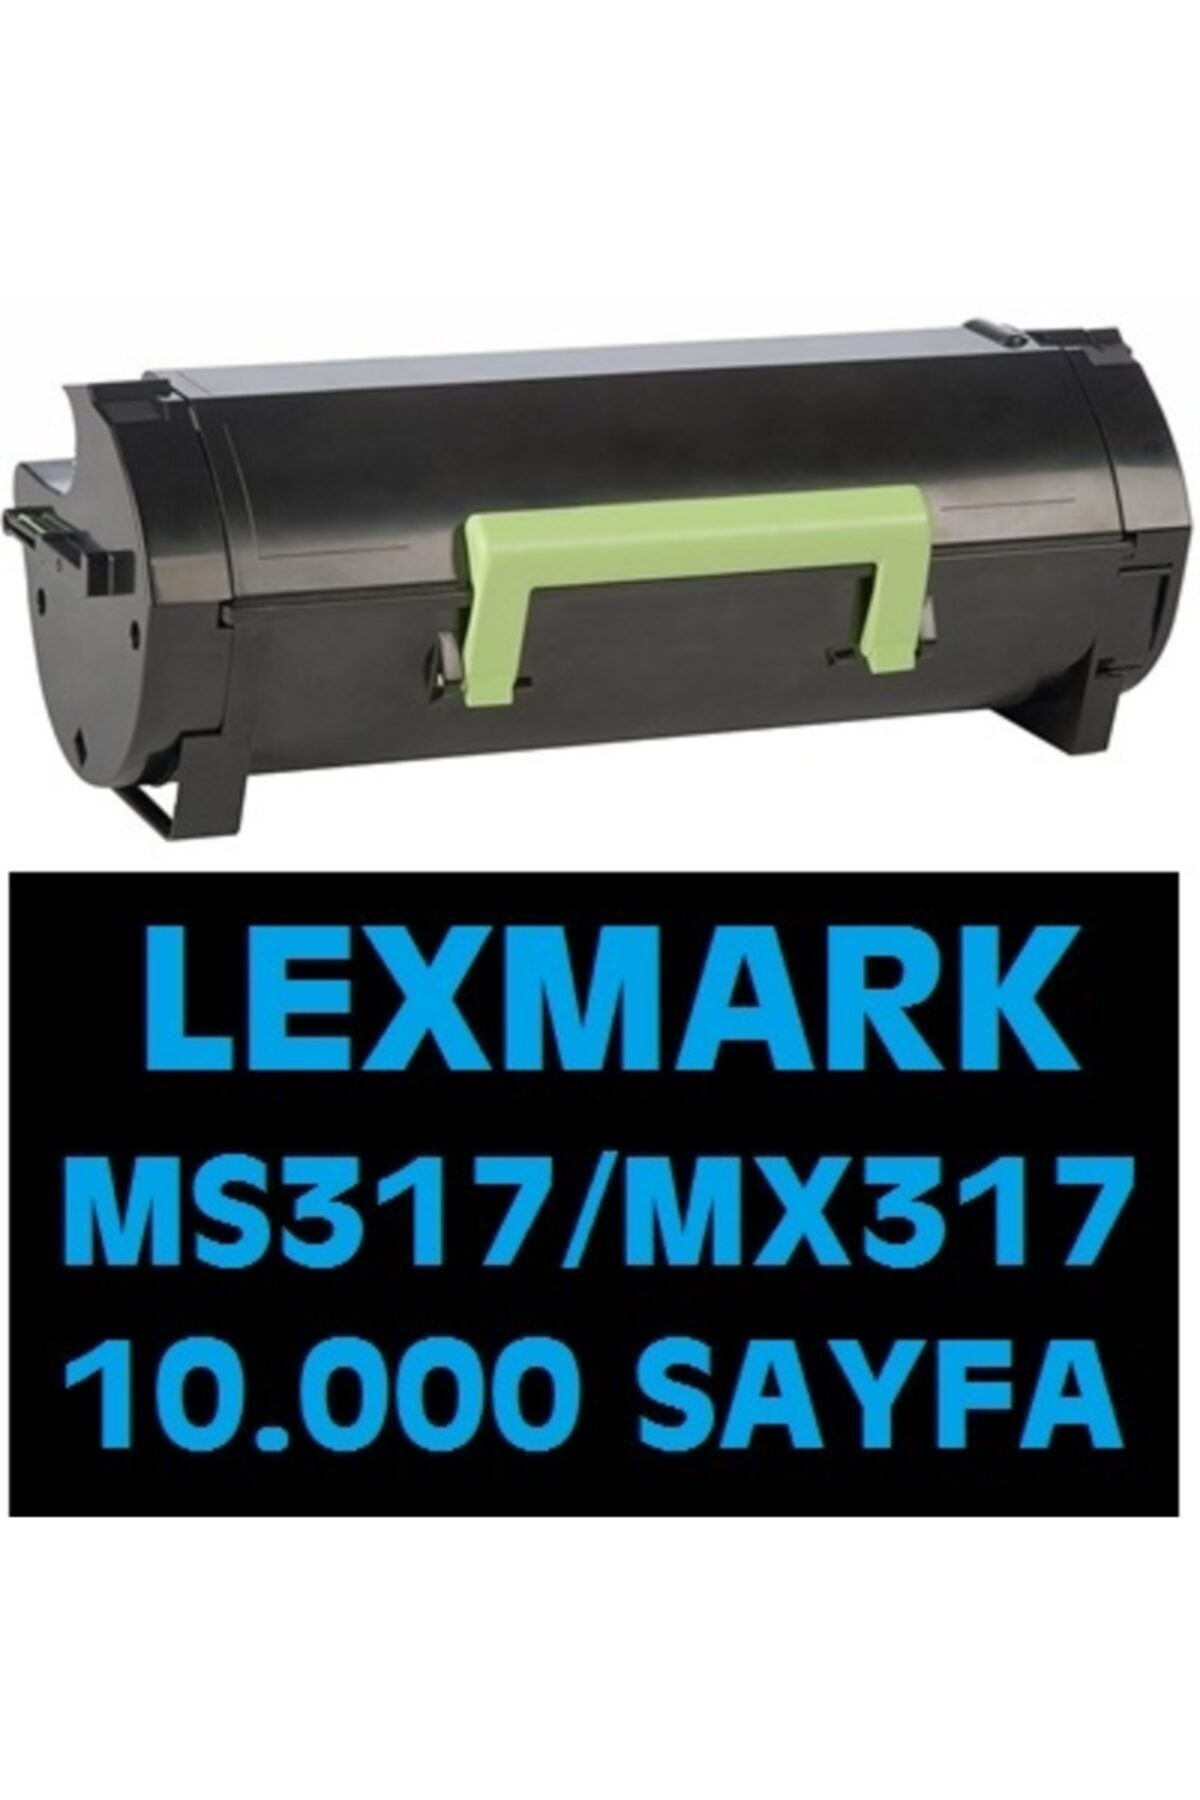 Lexmark Mx317dn Mx417dn Ms317dn 10.000 Sayfalık Toner